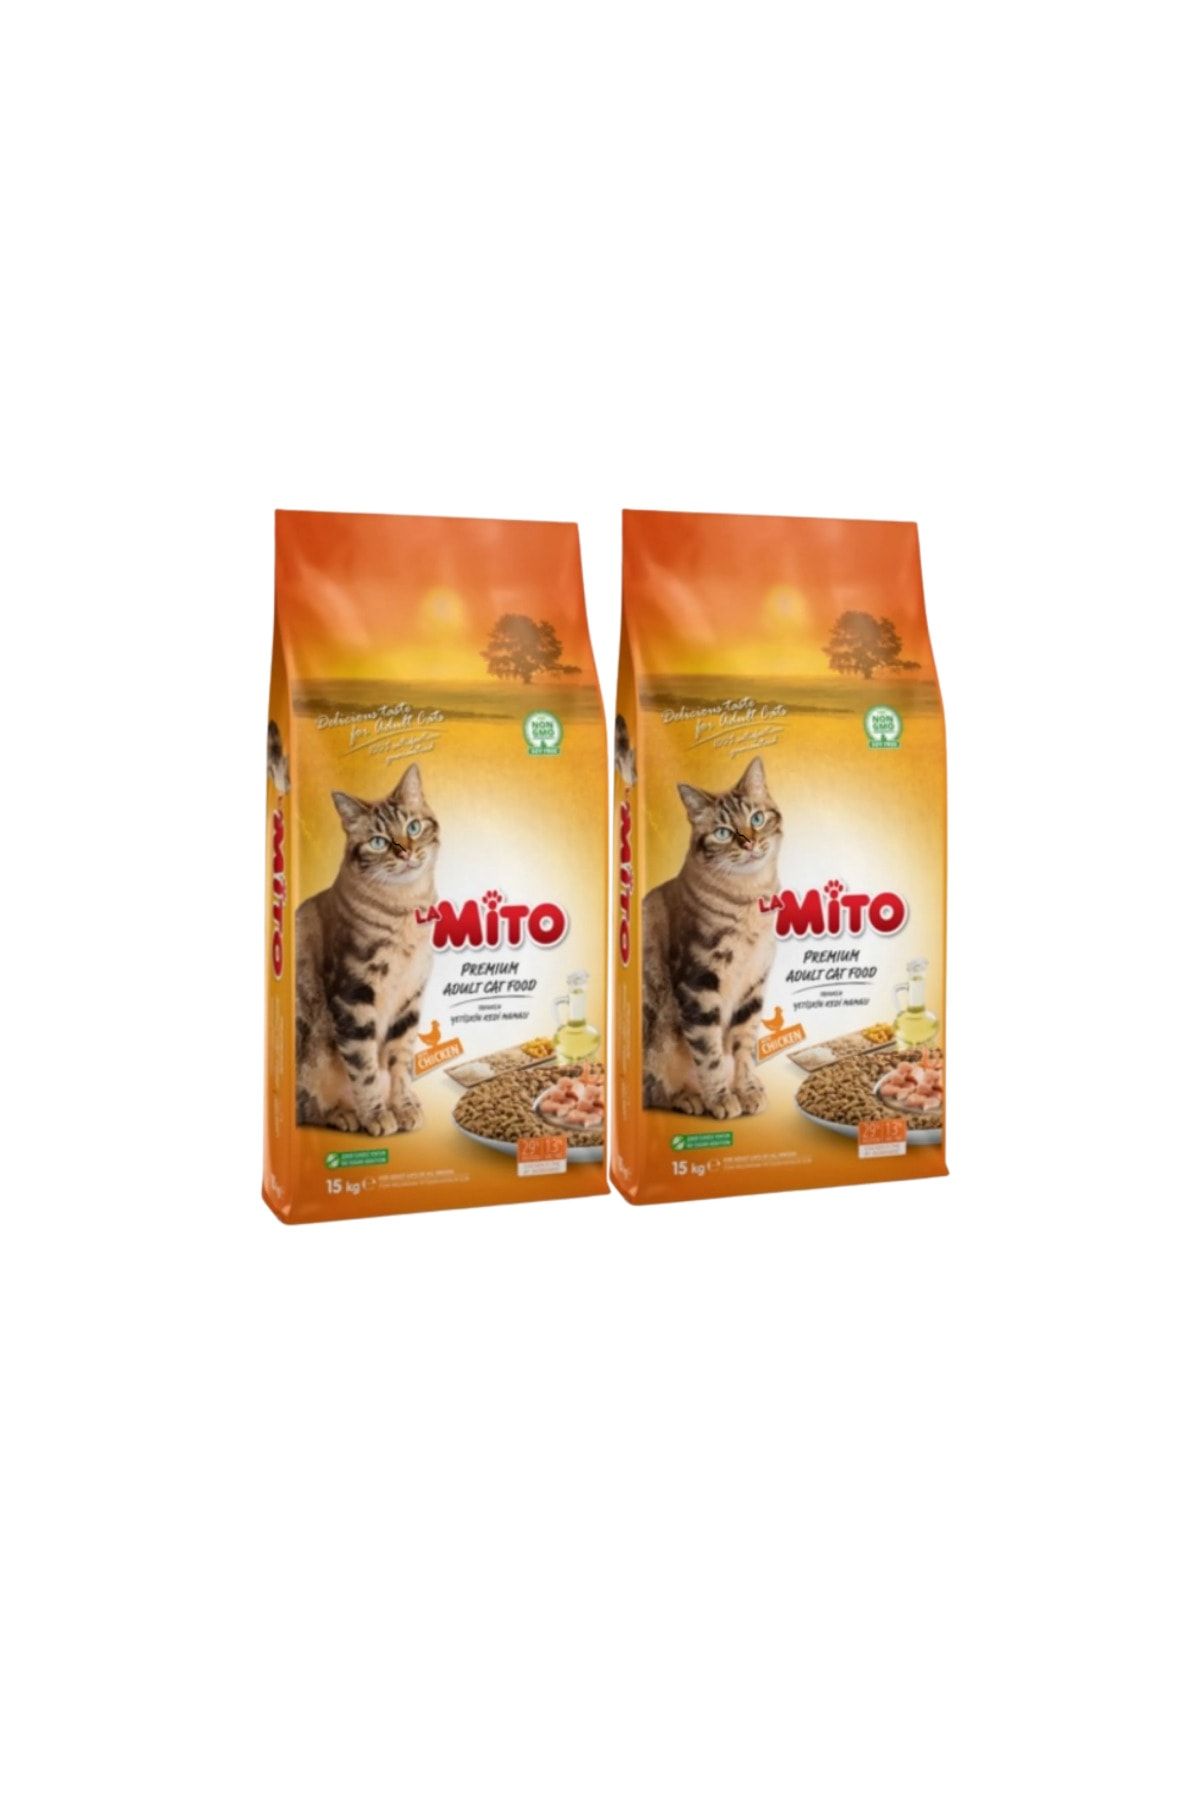 Mito La Adult Cat Tavuklu Yetişkin Kedi Maması 1kg* 2 Adet